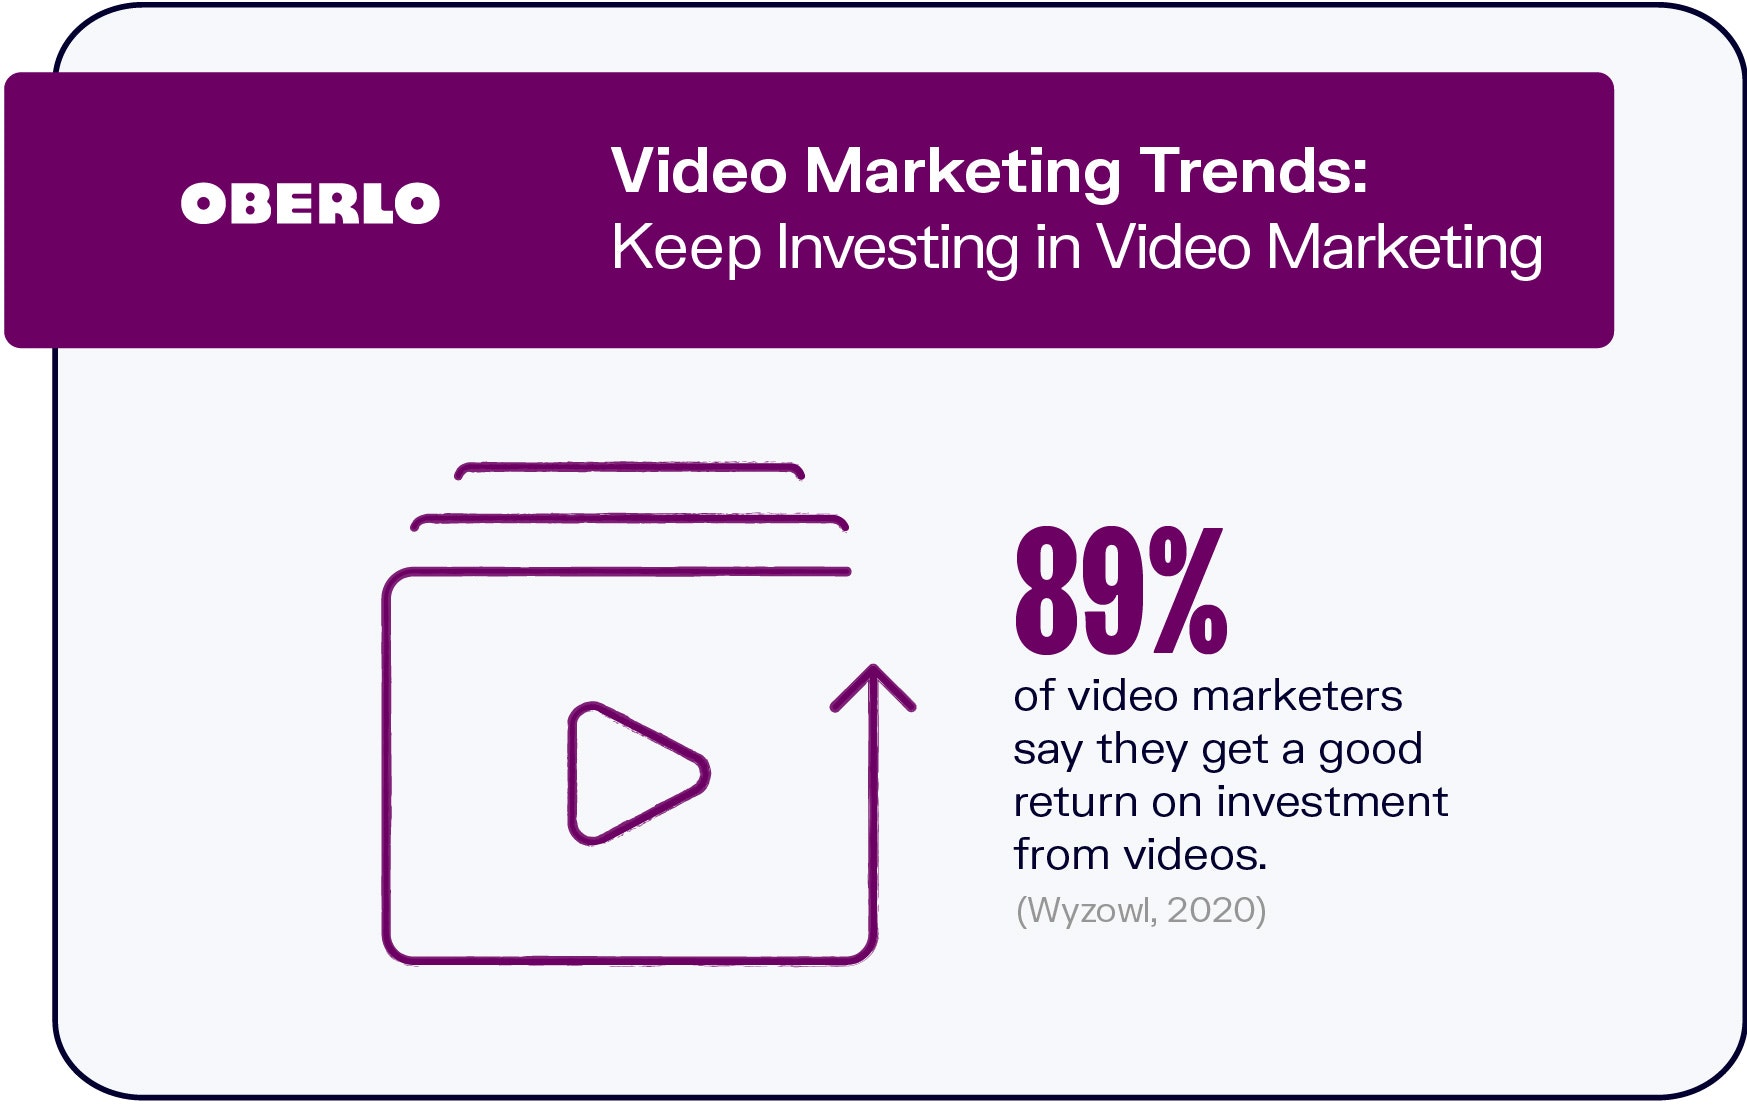 Tendencias de video marketing:Siga invirtiendo en video marketing